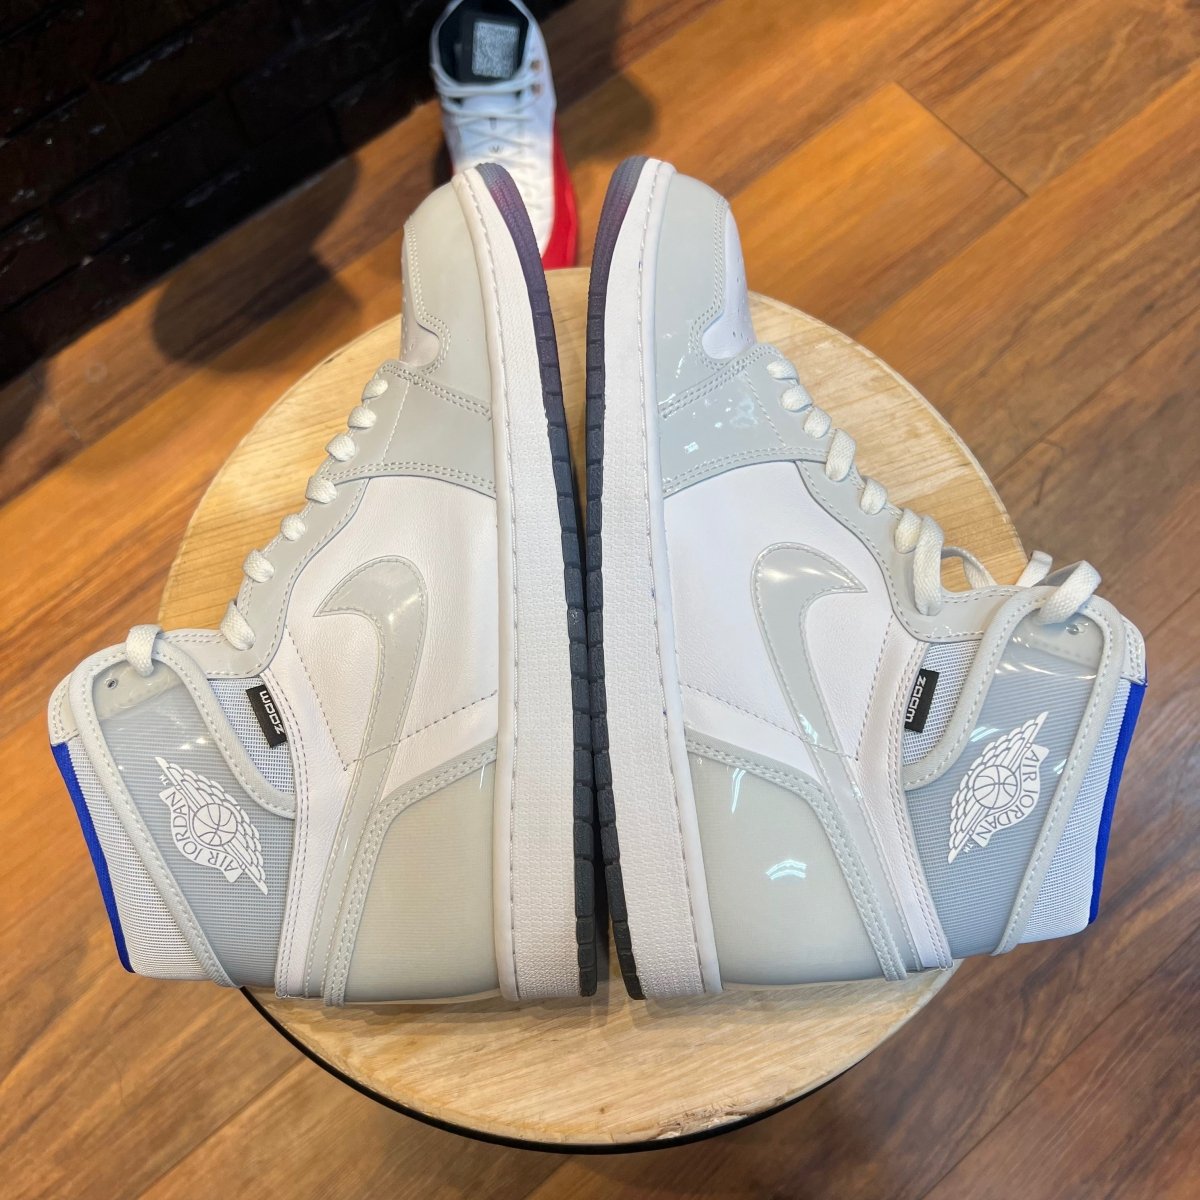 Air Jordan 1 High Zoom 'Racer Blue' Gently Enjoyed (Used) - Men 13 - High Sneaker - Jawns on Fire Sneakers & Streetwear